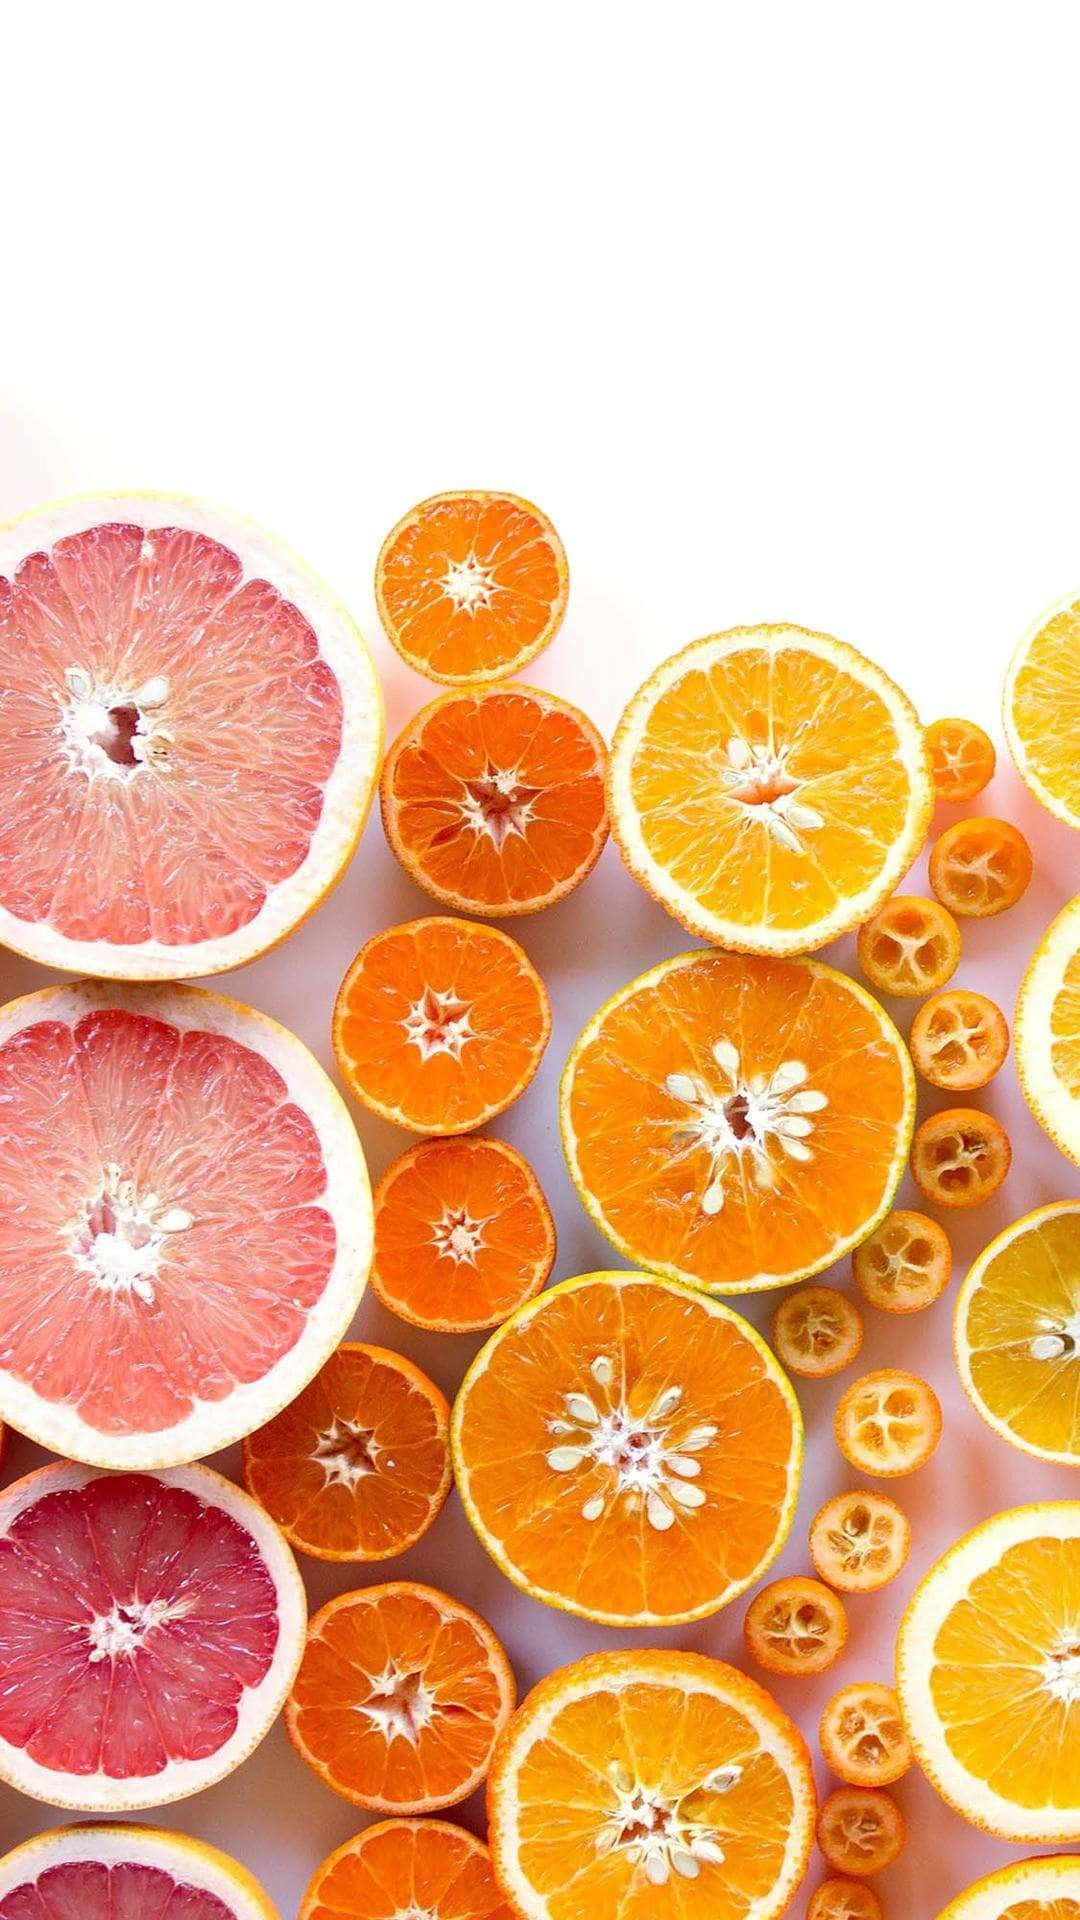 En bunke af appelsiner og grapefrugter spredt over en lyseblå tapet. Wallpaper